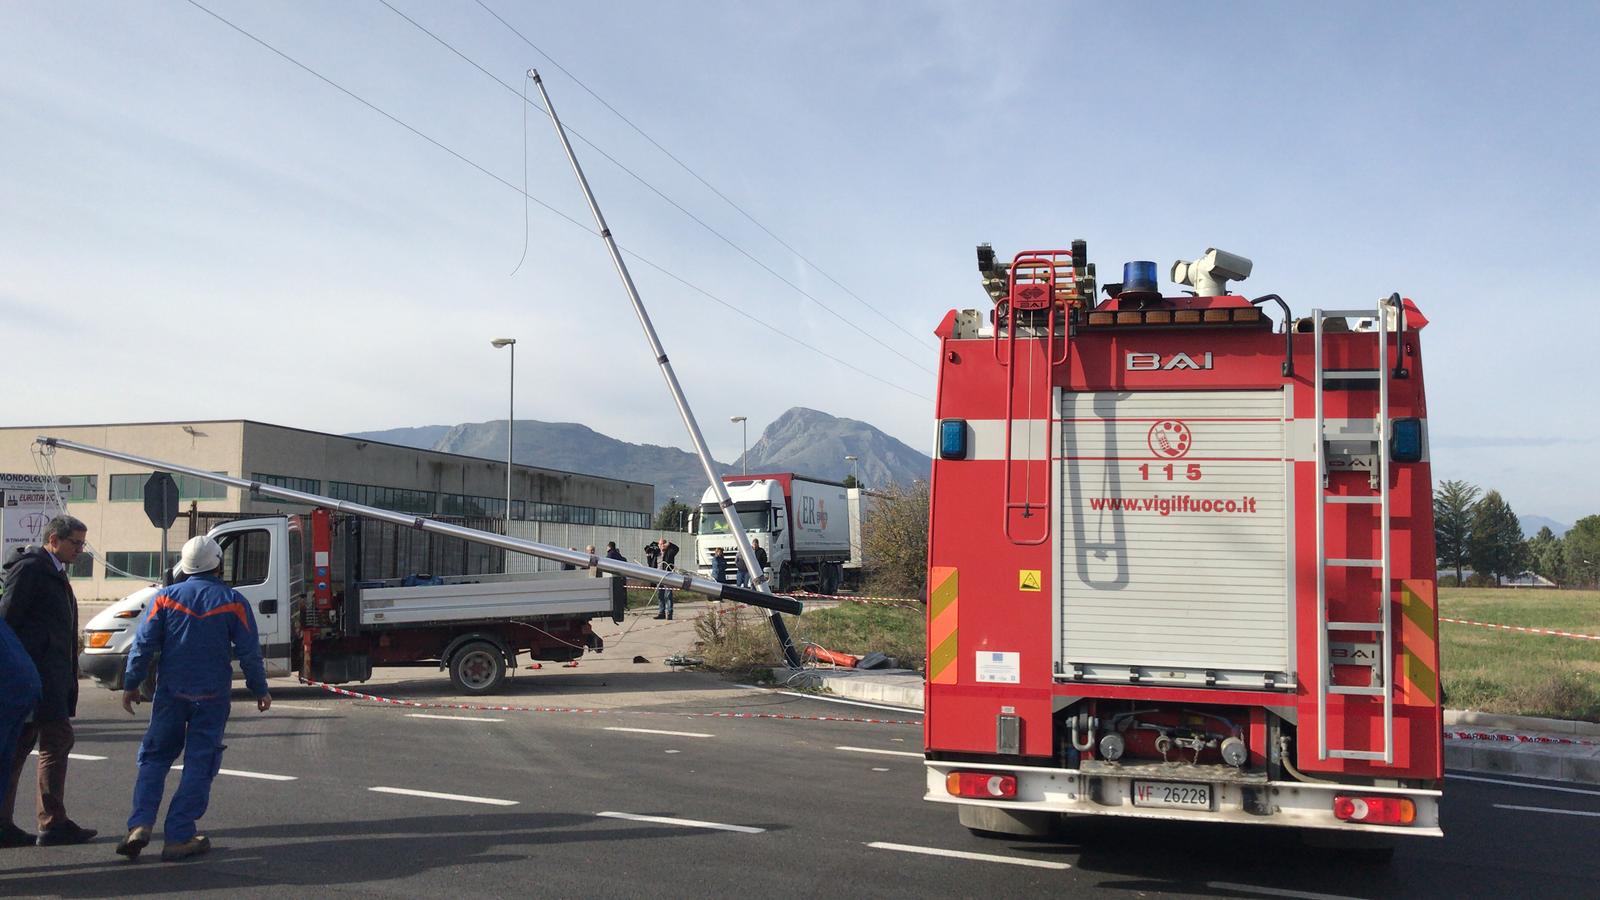 Benevento| Operaio colpito da scarica elettrica,sfiorata la tragedia